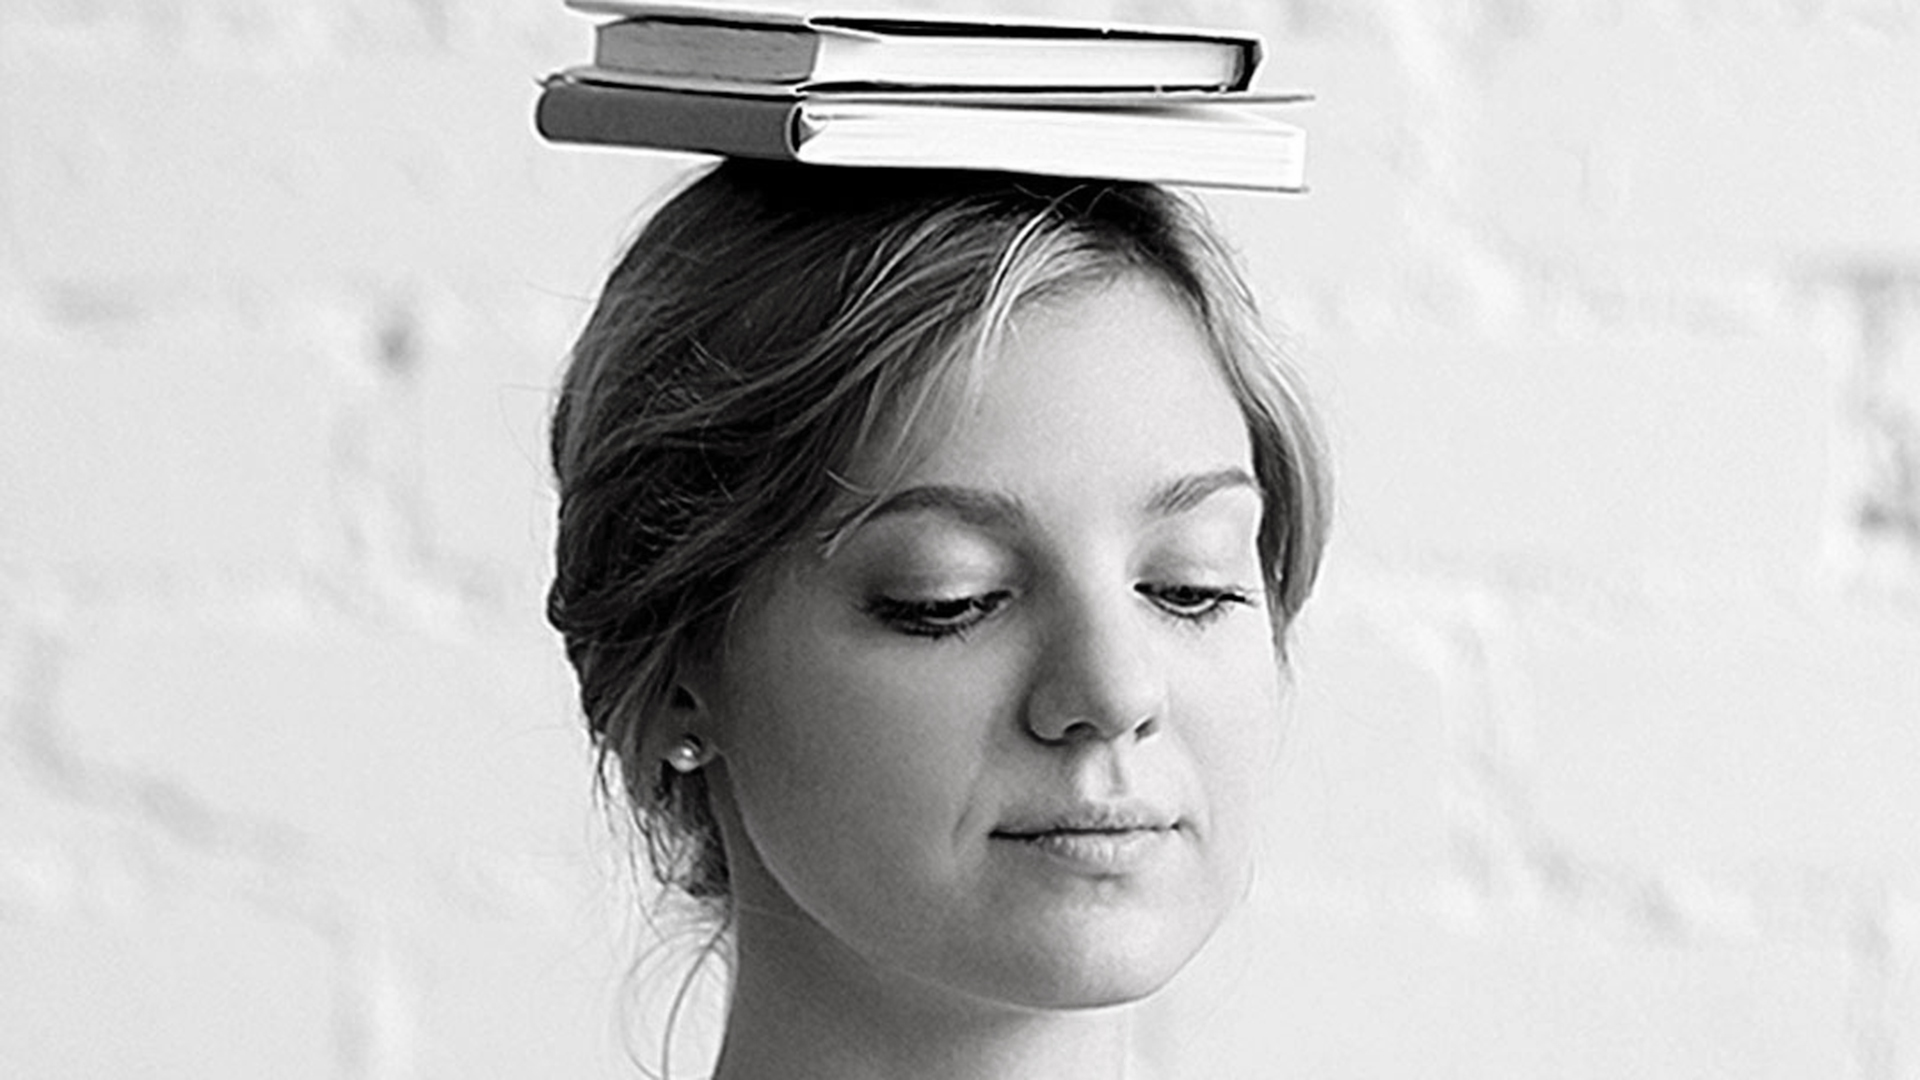 Bücher auf dem Kopf balancieren